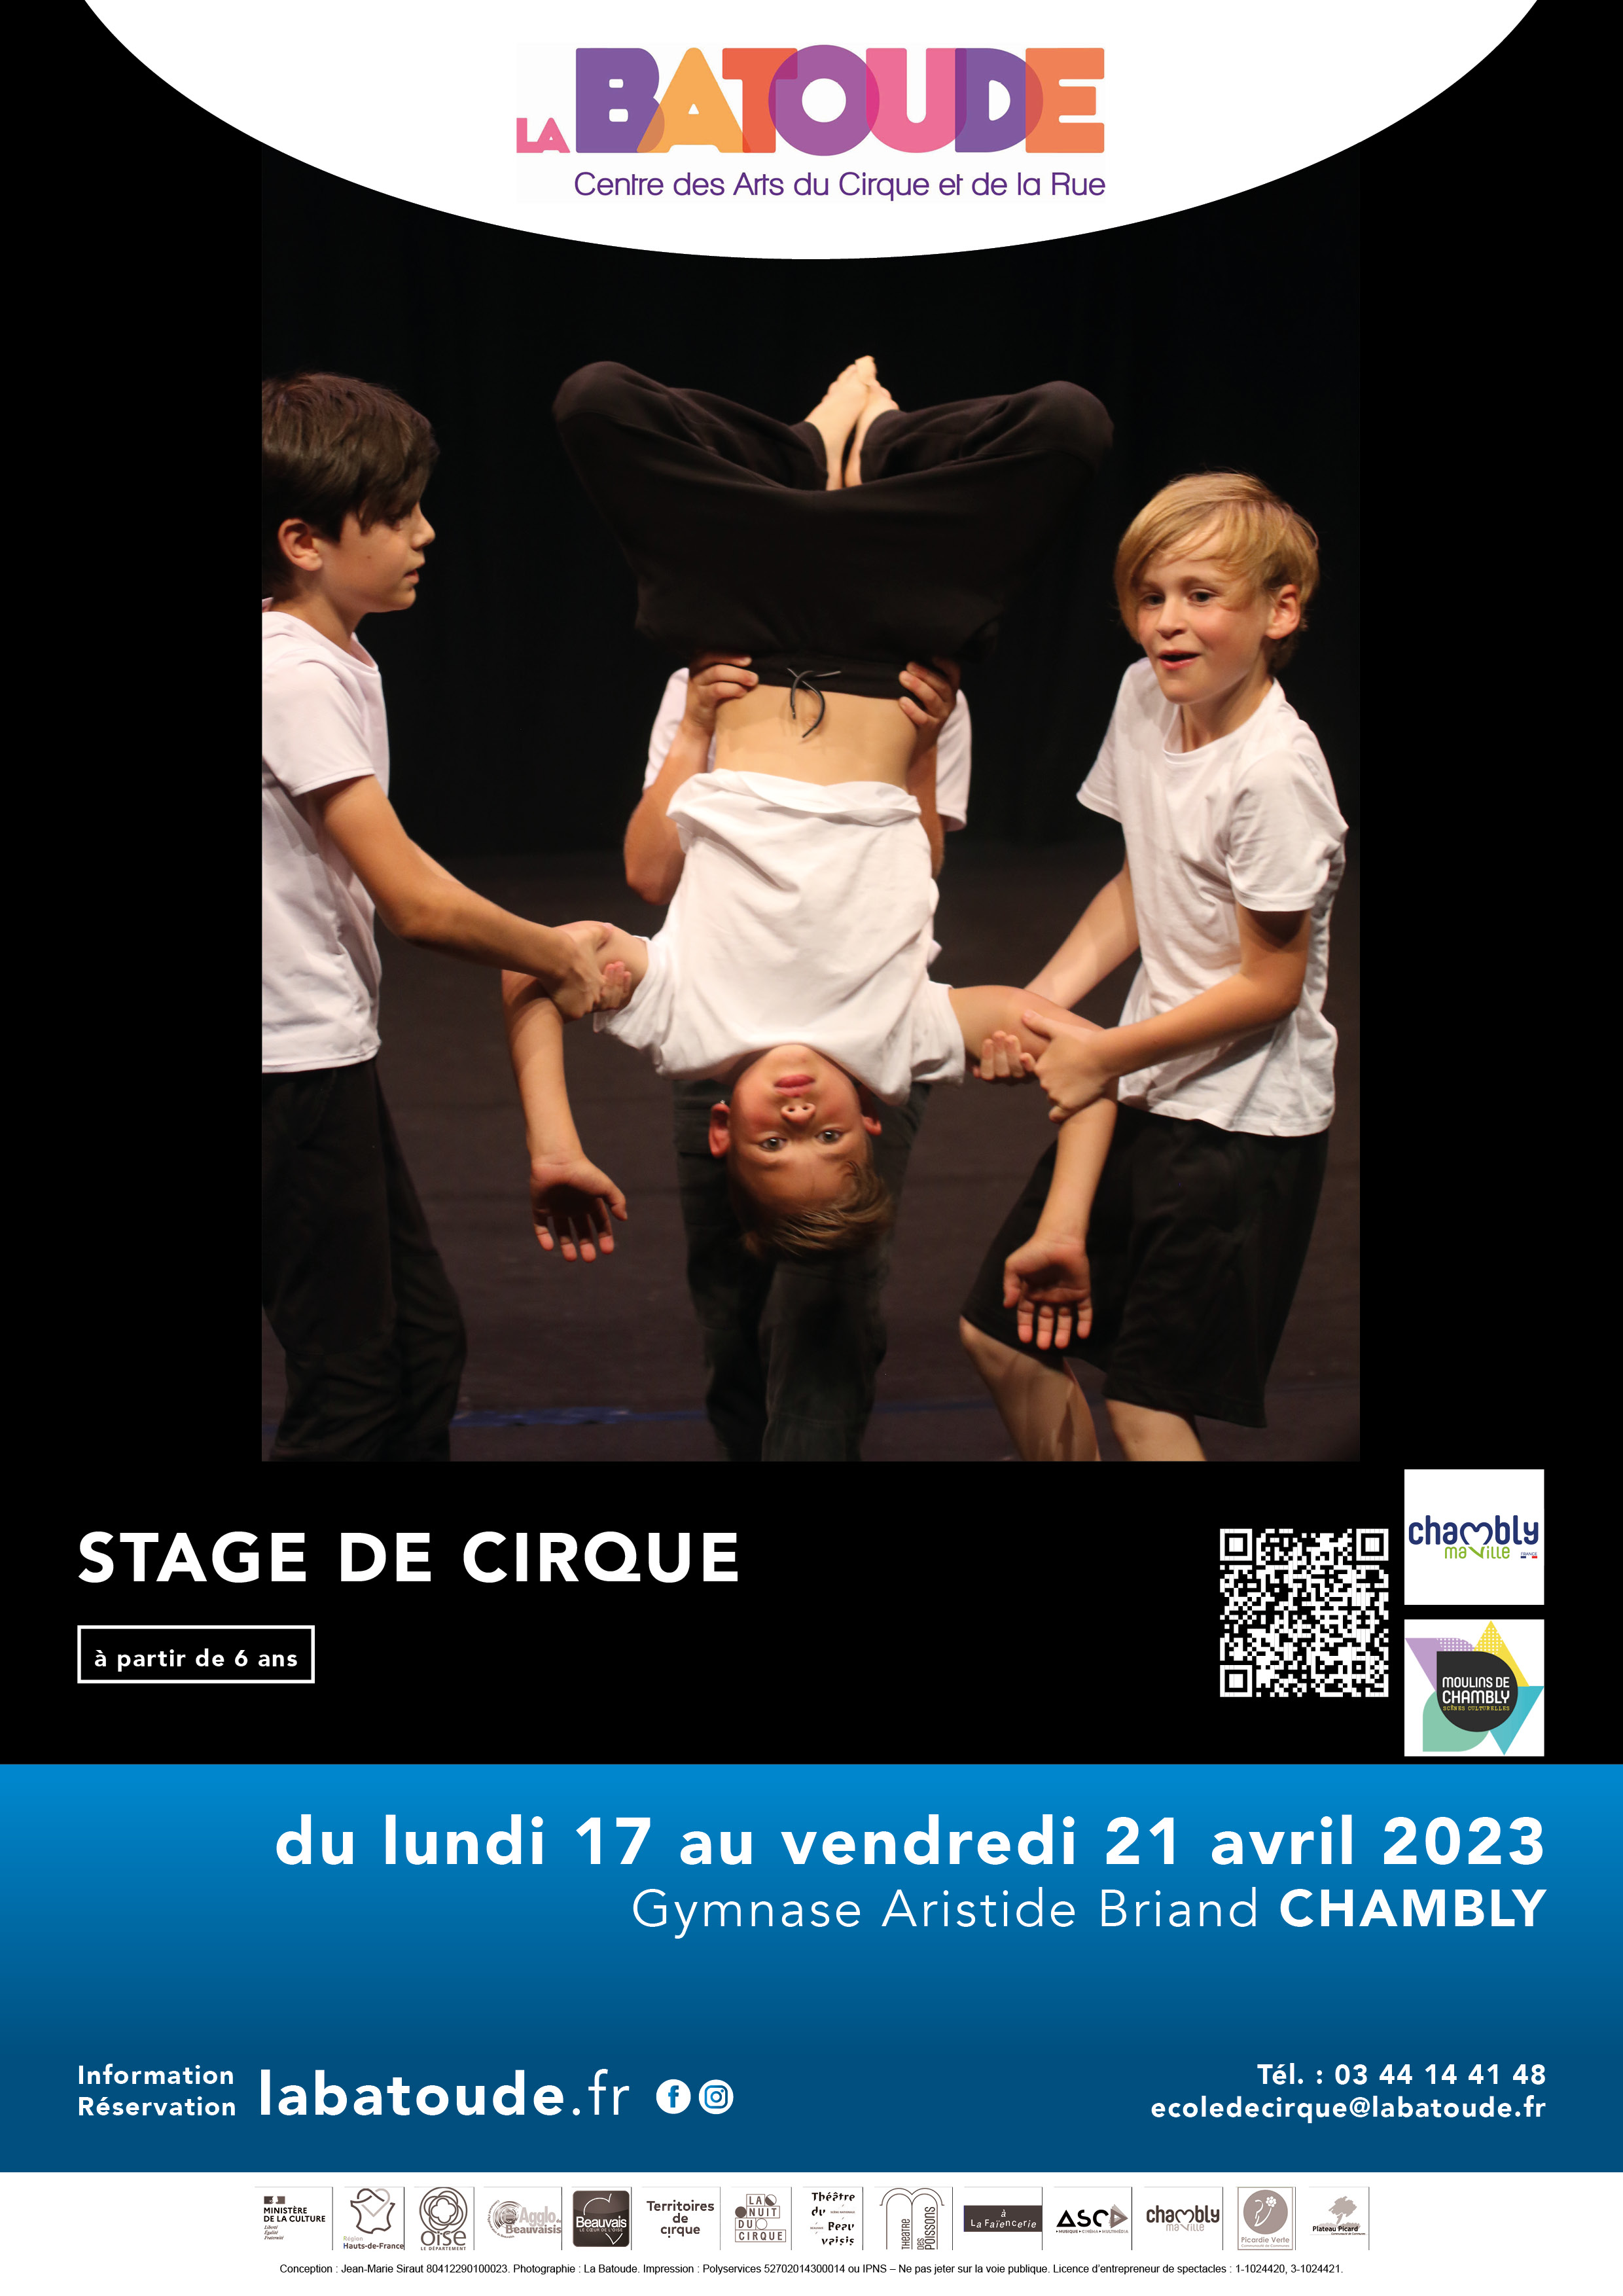 Stage à Chambly - La Batoude, centre des arts du cirque et de la rue